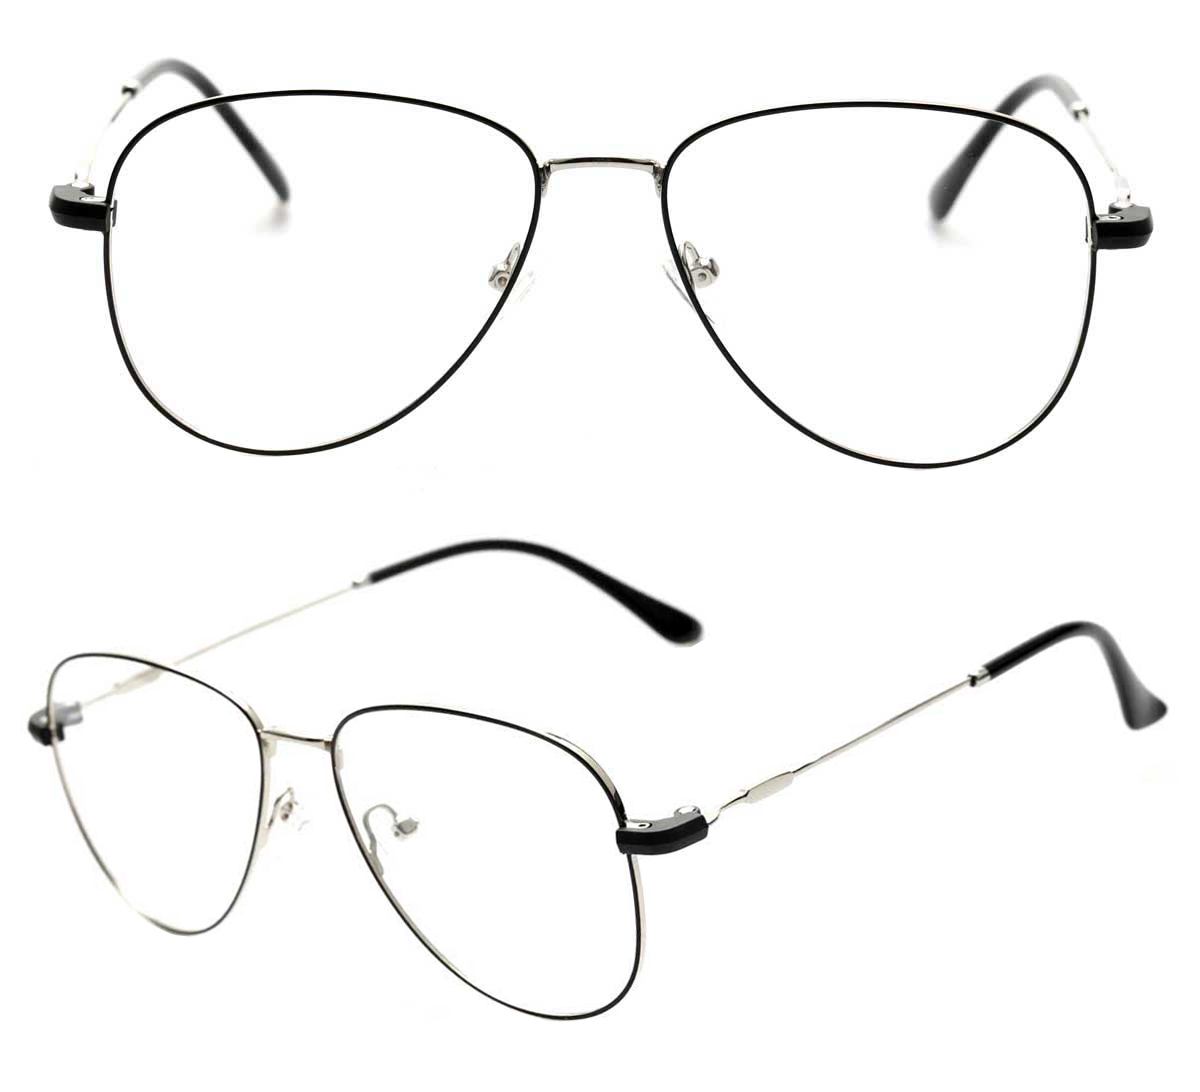 Sunglass Clips For Glasses Manufacturer, Oem Odm Clip On Eyewear Frames